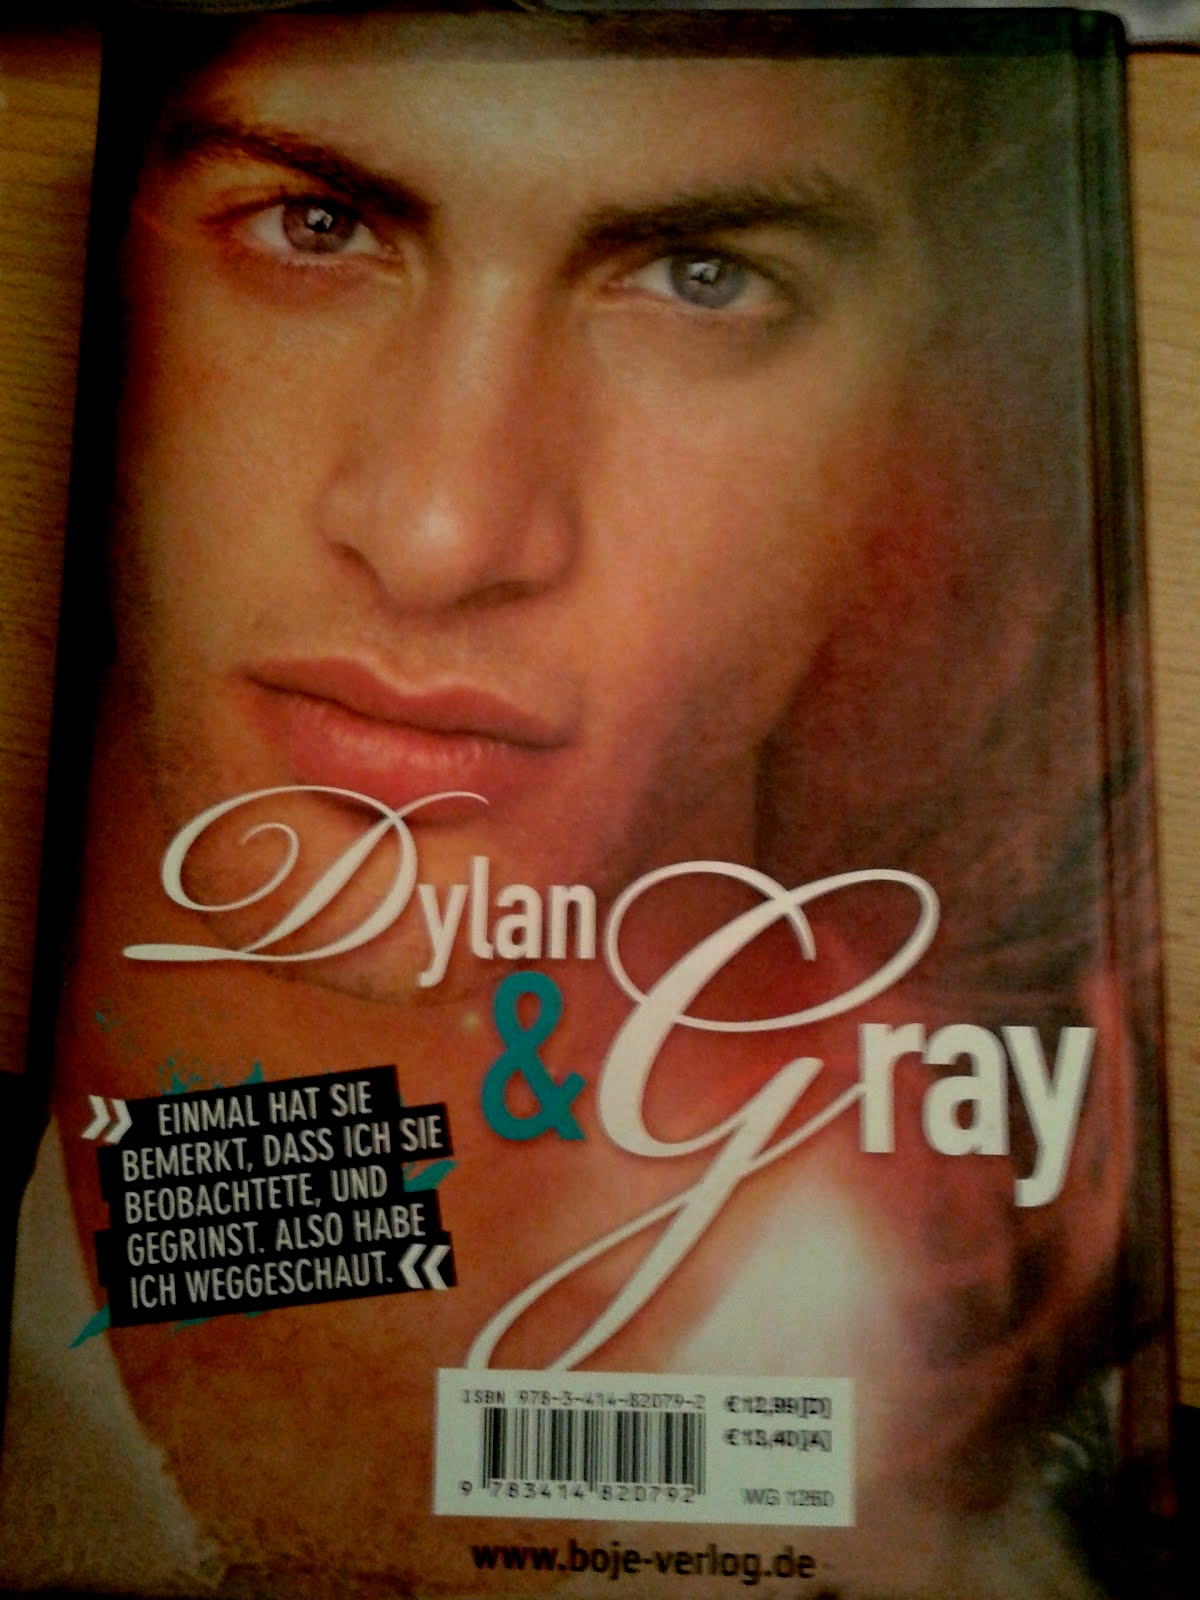 Dylan und Gray